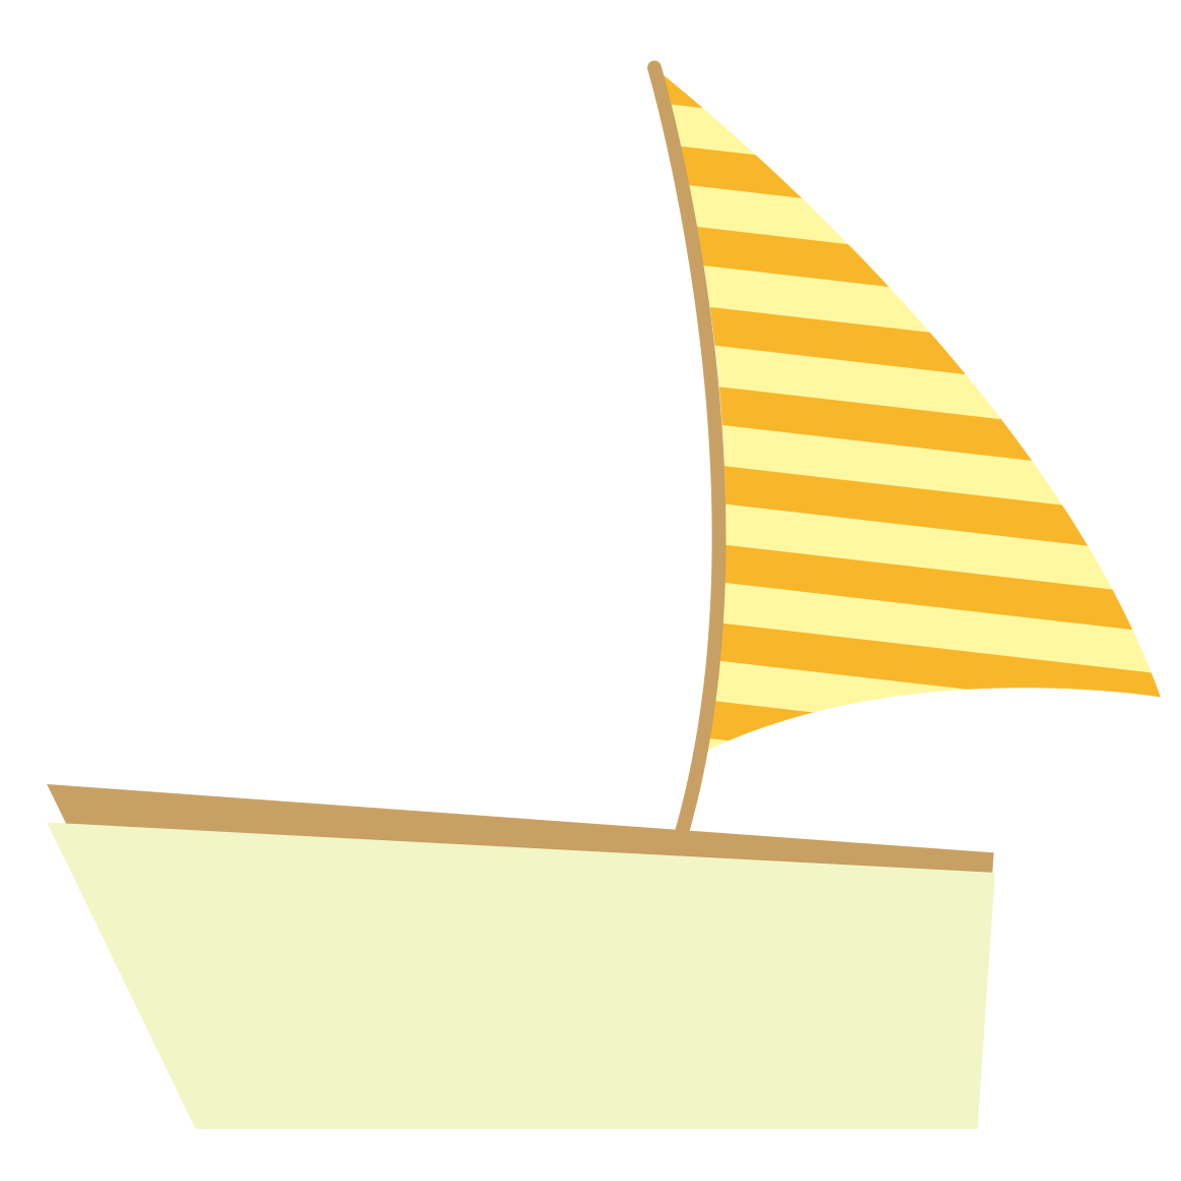 黄色の旗のヨット